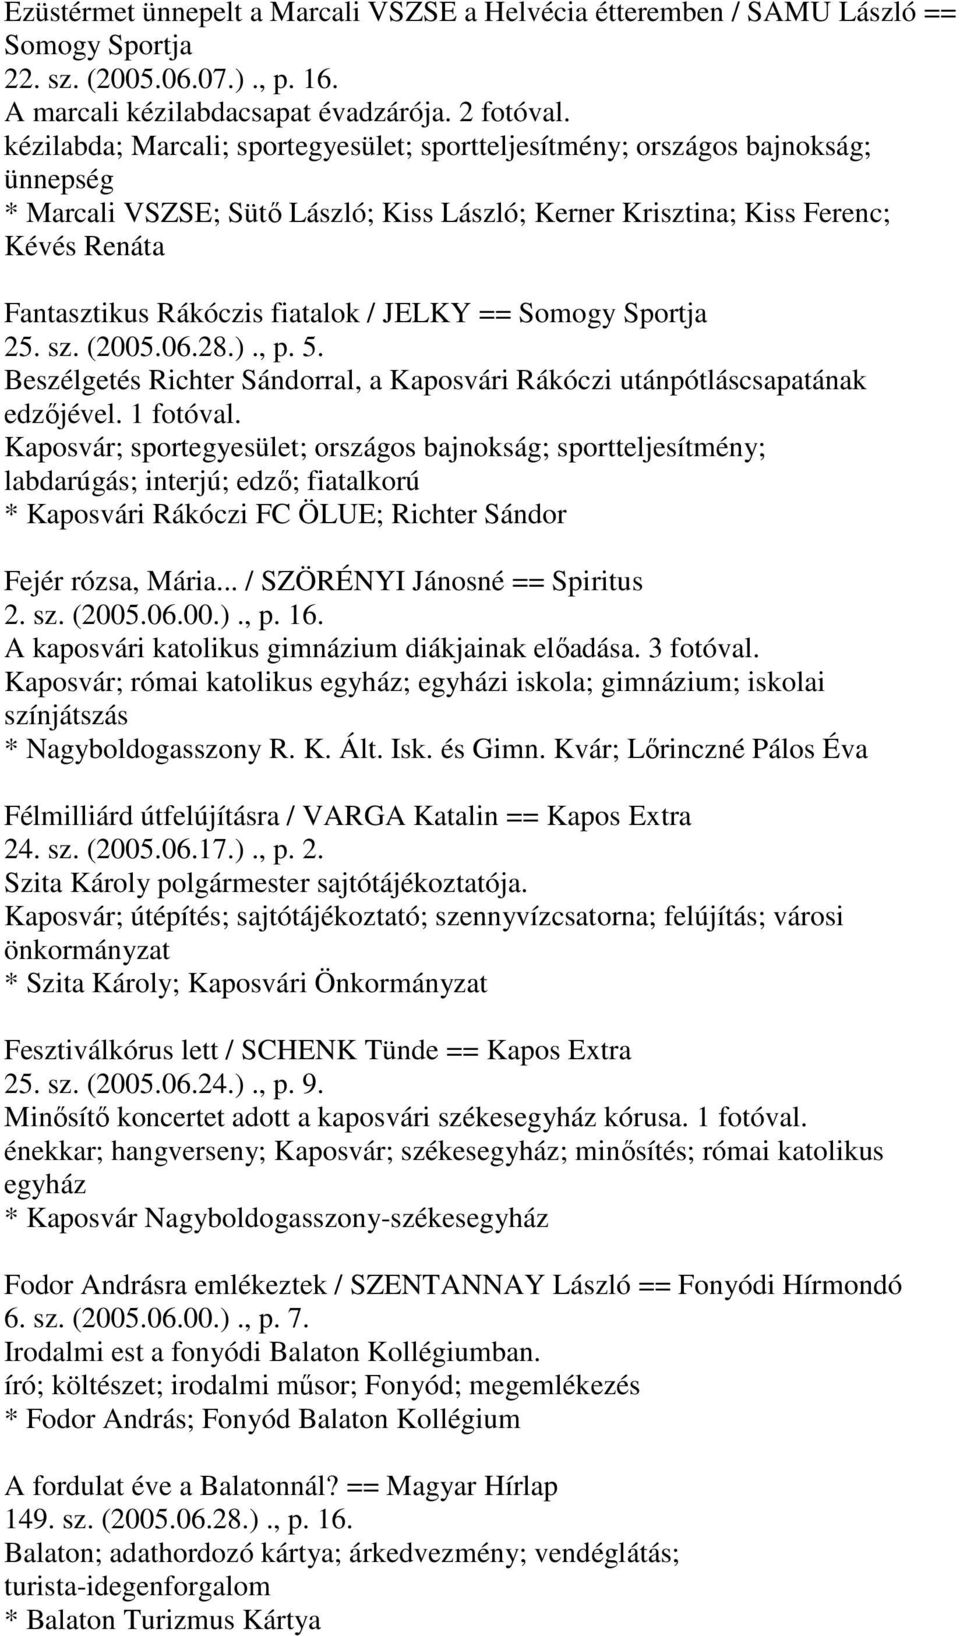 fiatalok / JELKY == Somogy Sportja 25. sz. (2005.06.28.)., p. 5. Beszélgetés Richter Sándorral, a Kaposvári Rákóczi utánpótláscsapatának edzőjével. 1 fotóval.